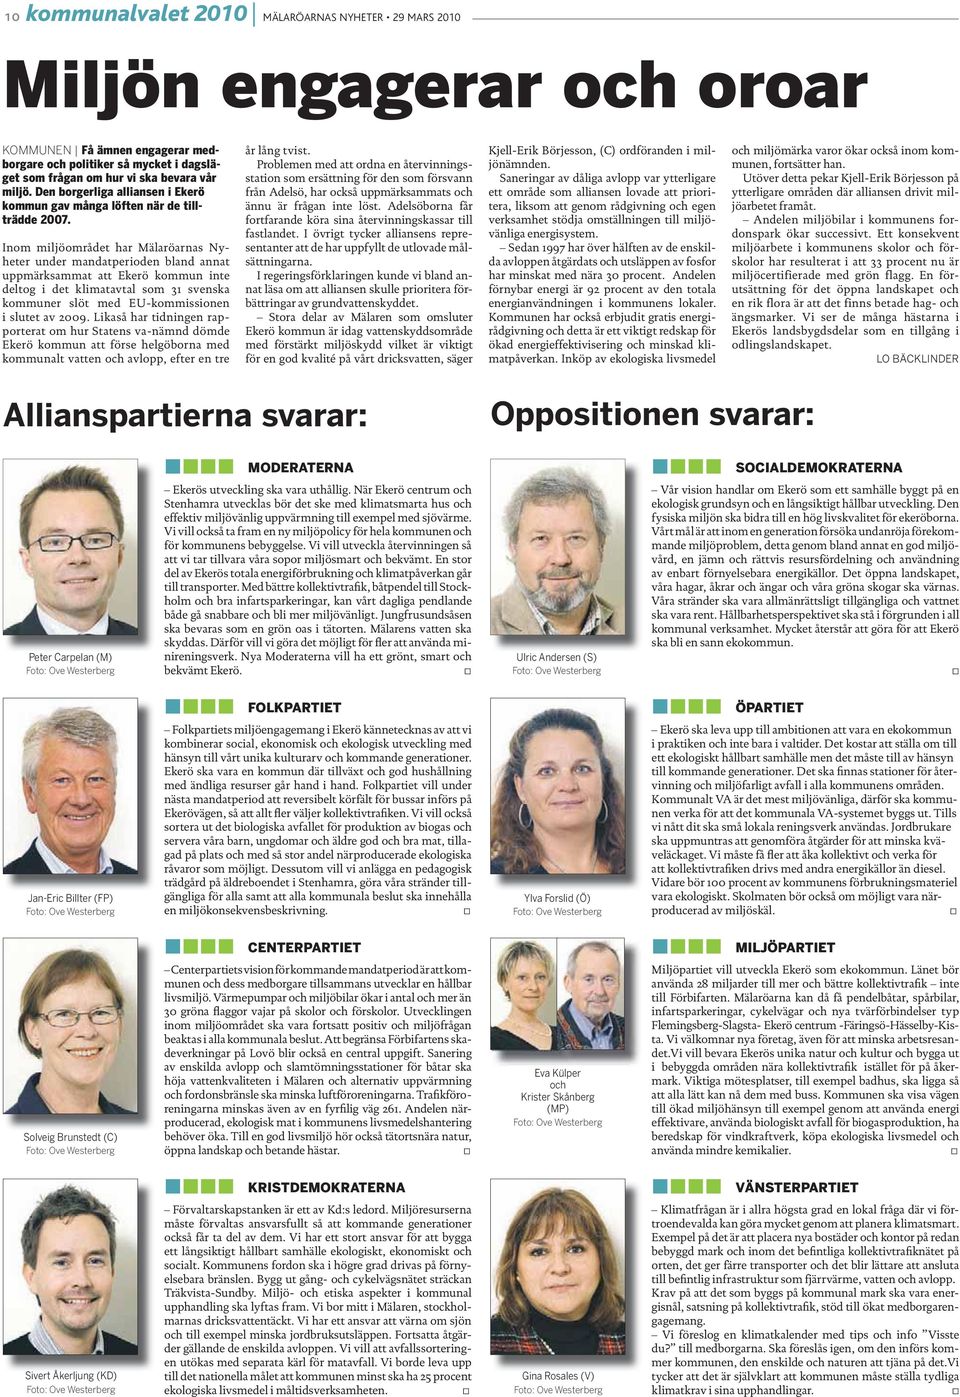 % Inom miljöområdet har Mälaröarnas Nyheter under mandatperioden bland annat uppmärksammat att Ekerö kommun inte deltog i det klimatavtal som 31 svenska kommuner slöt med EU-kommissionen i slutet av